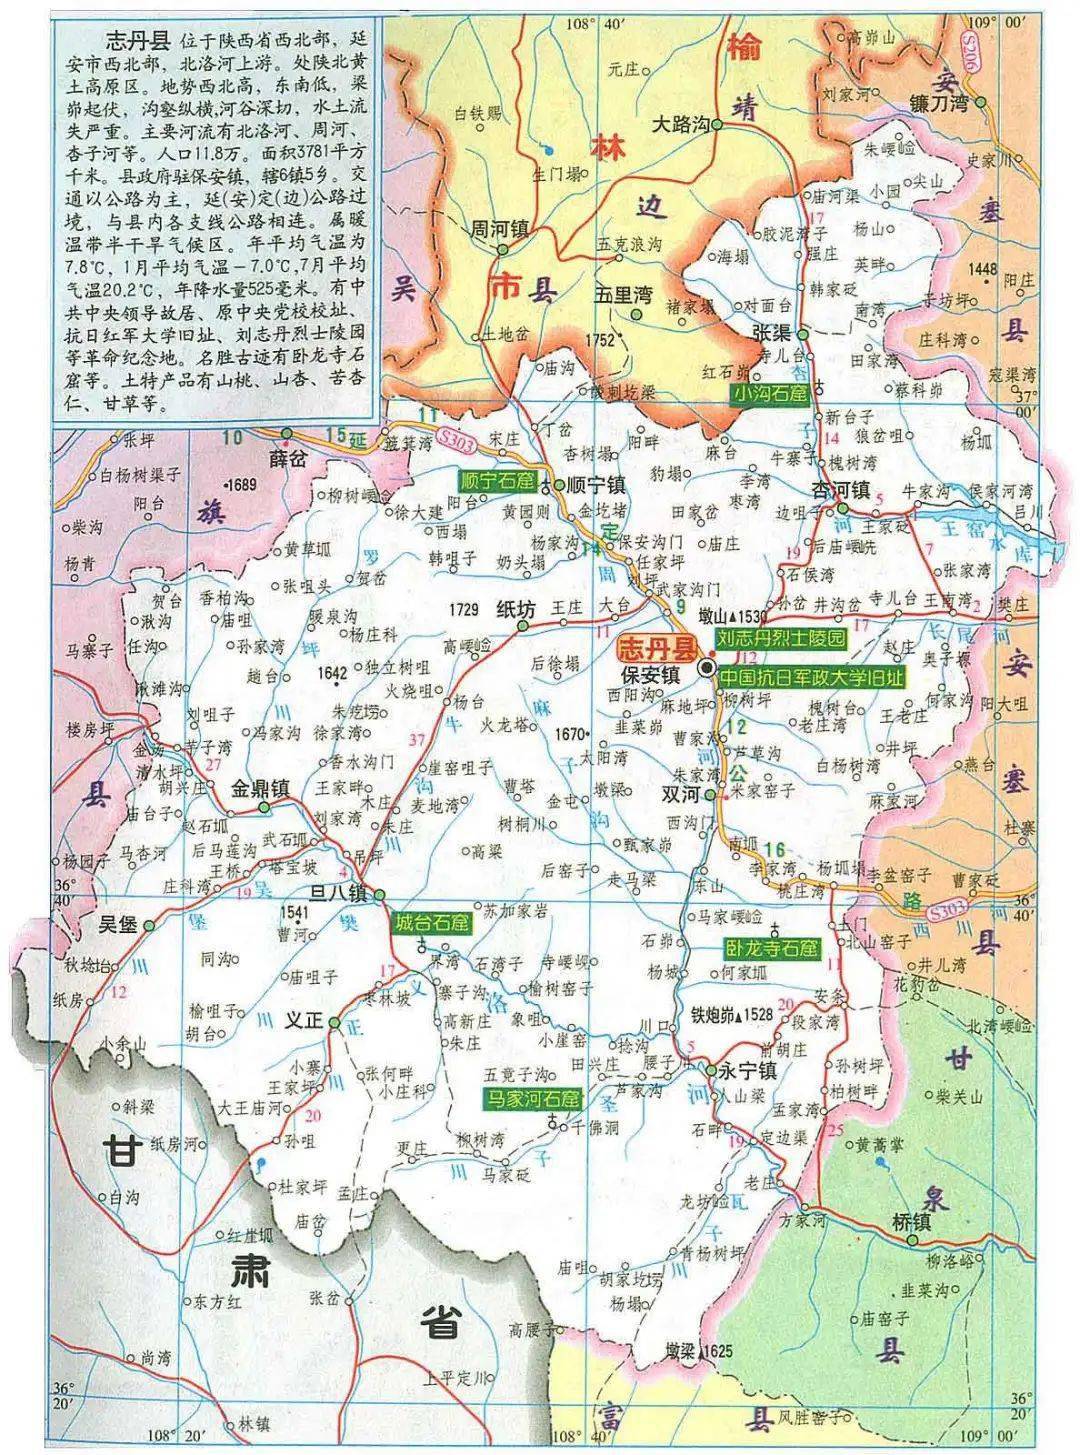 3陕西省志丹县(刘志丹)河北省辖县级市黄骅市,由沧州市代管